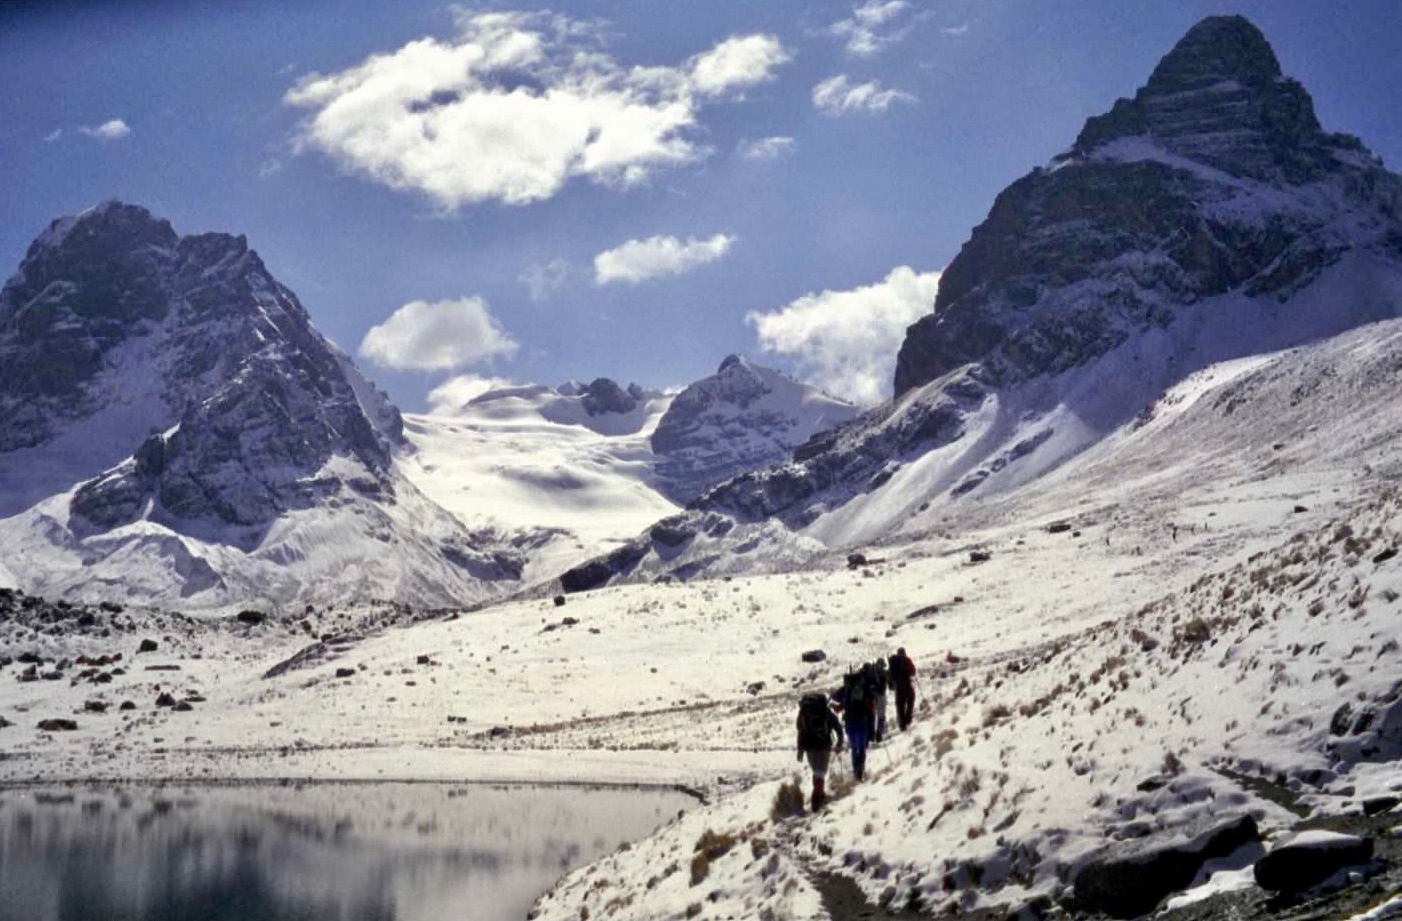 Cordillera Real, Bolivia